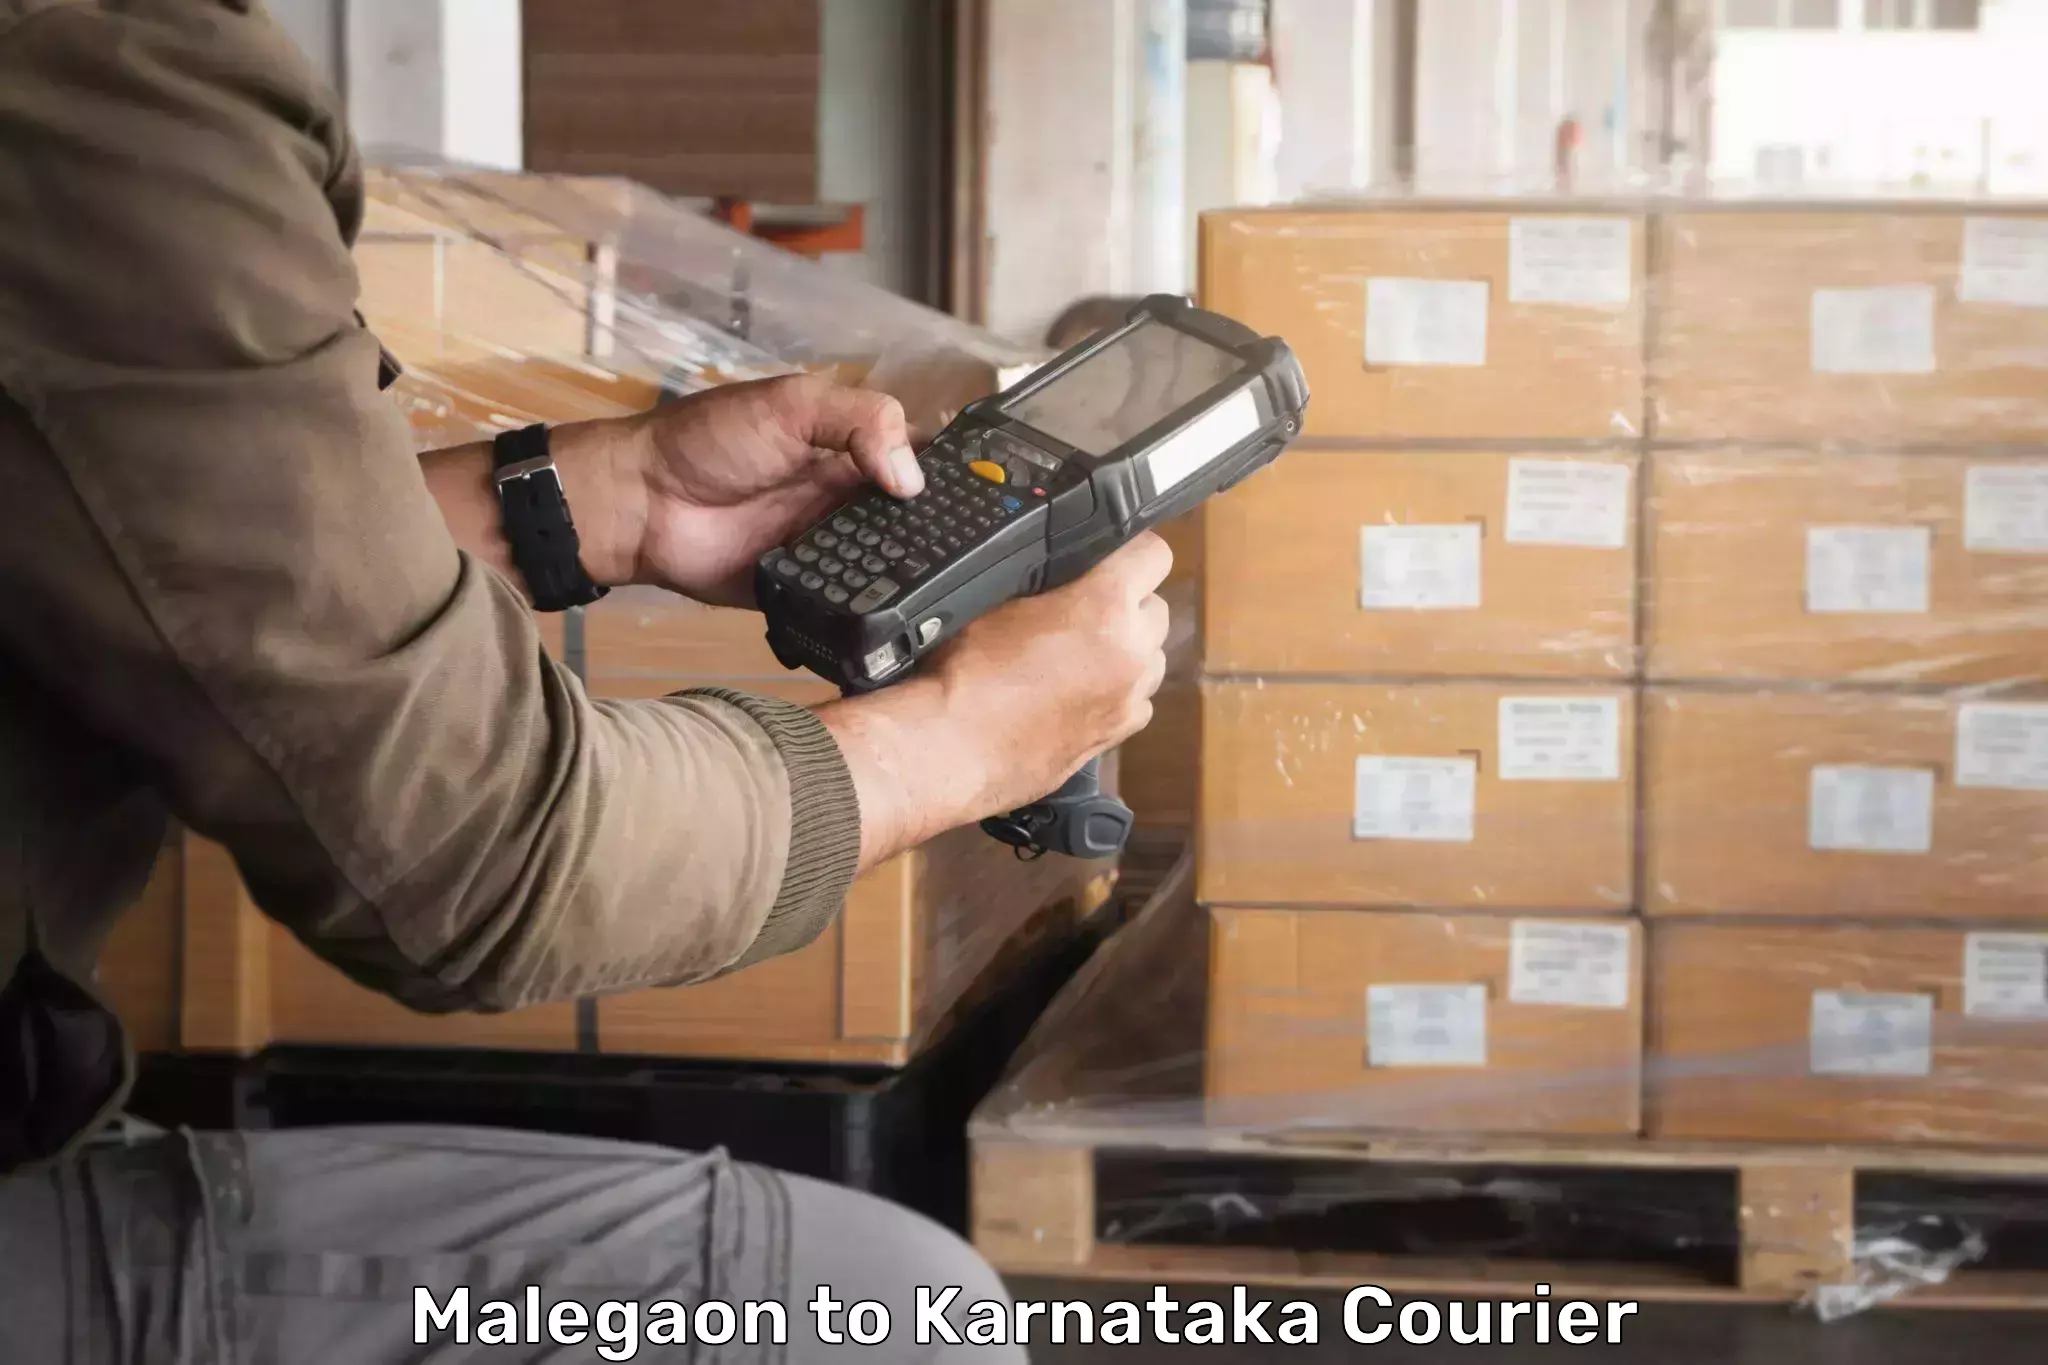 Global shipping solutions Malegaon to Mahalingpur